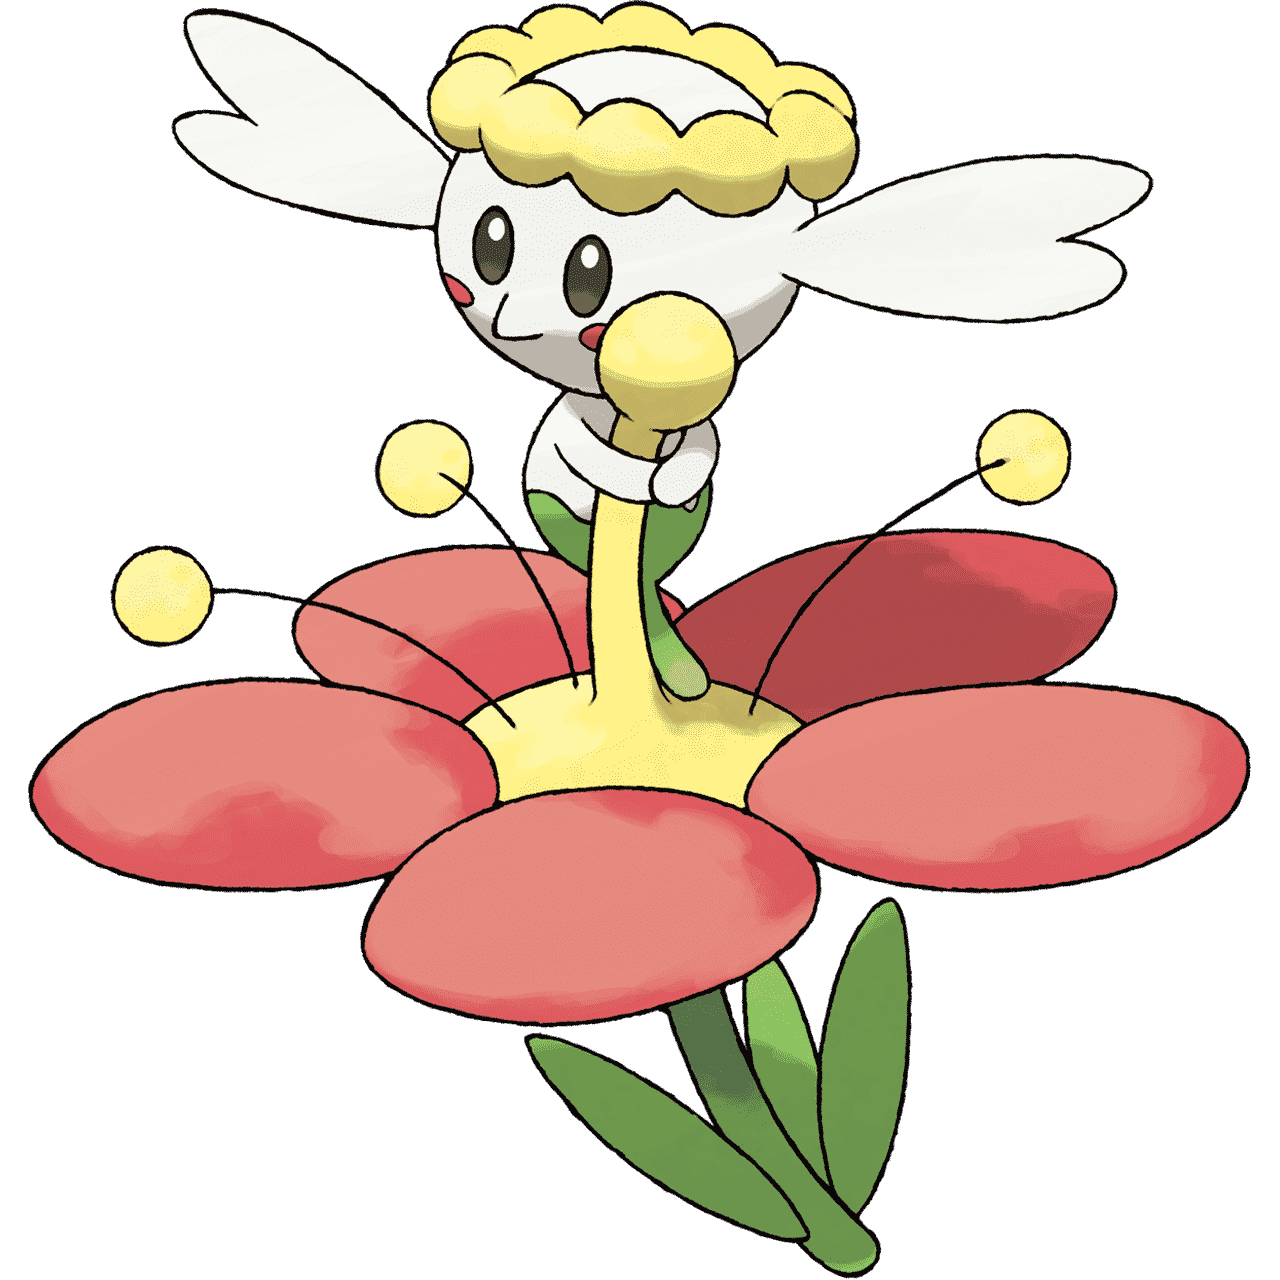 Pokémon Artwork Flabébé